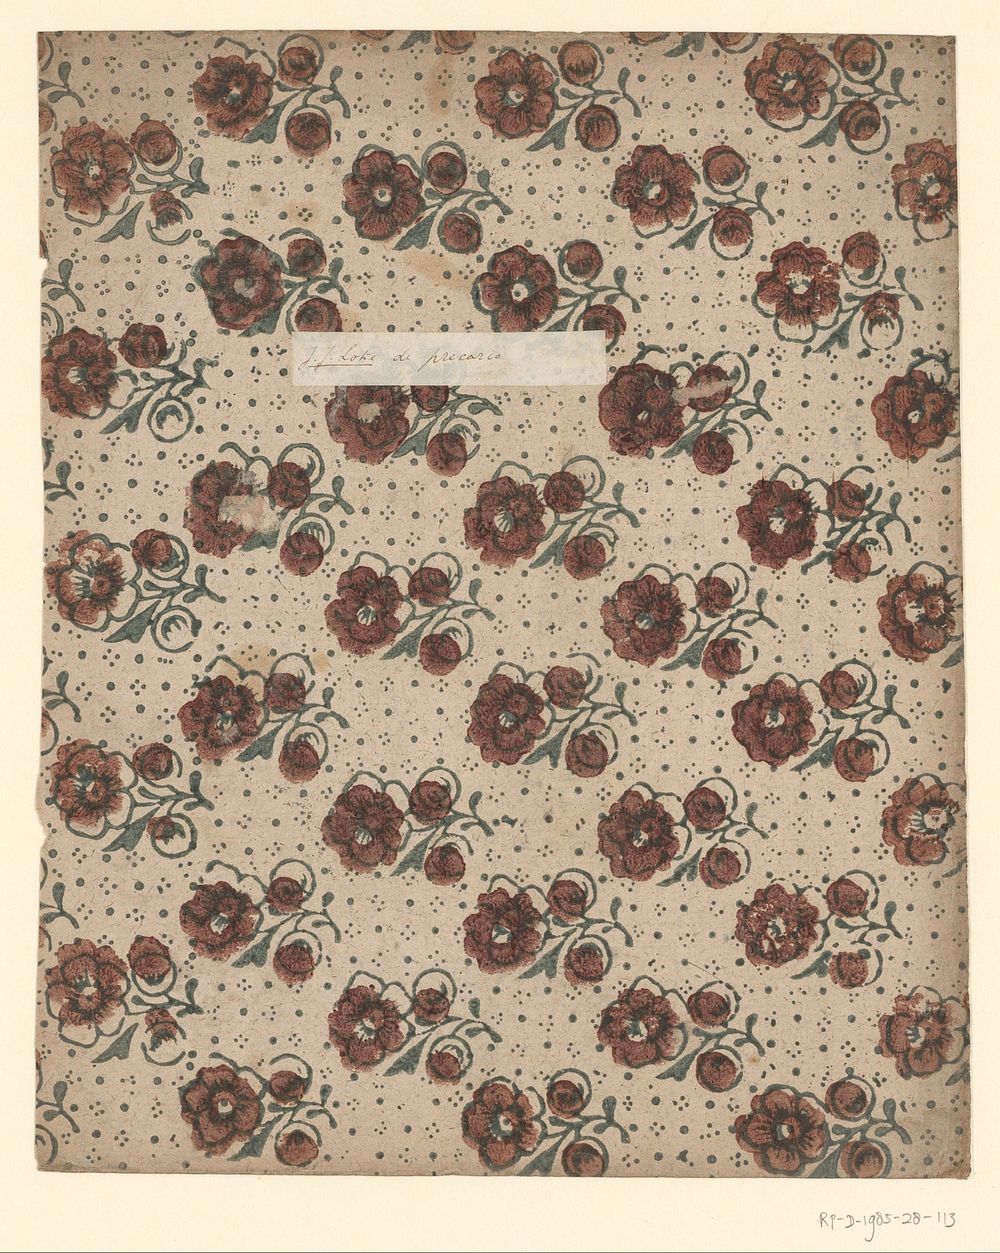 Blad met strooipatroon van bloemen in een puntenfond (1750 - 1900) by anonymous